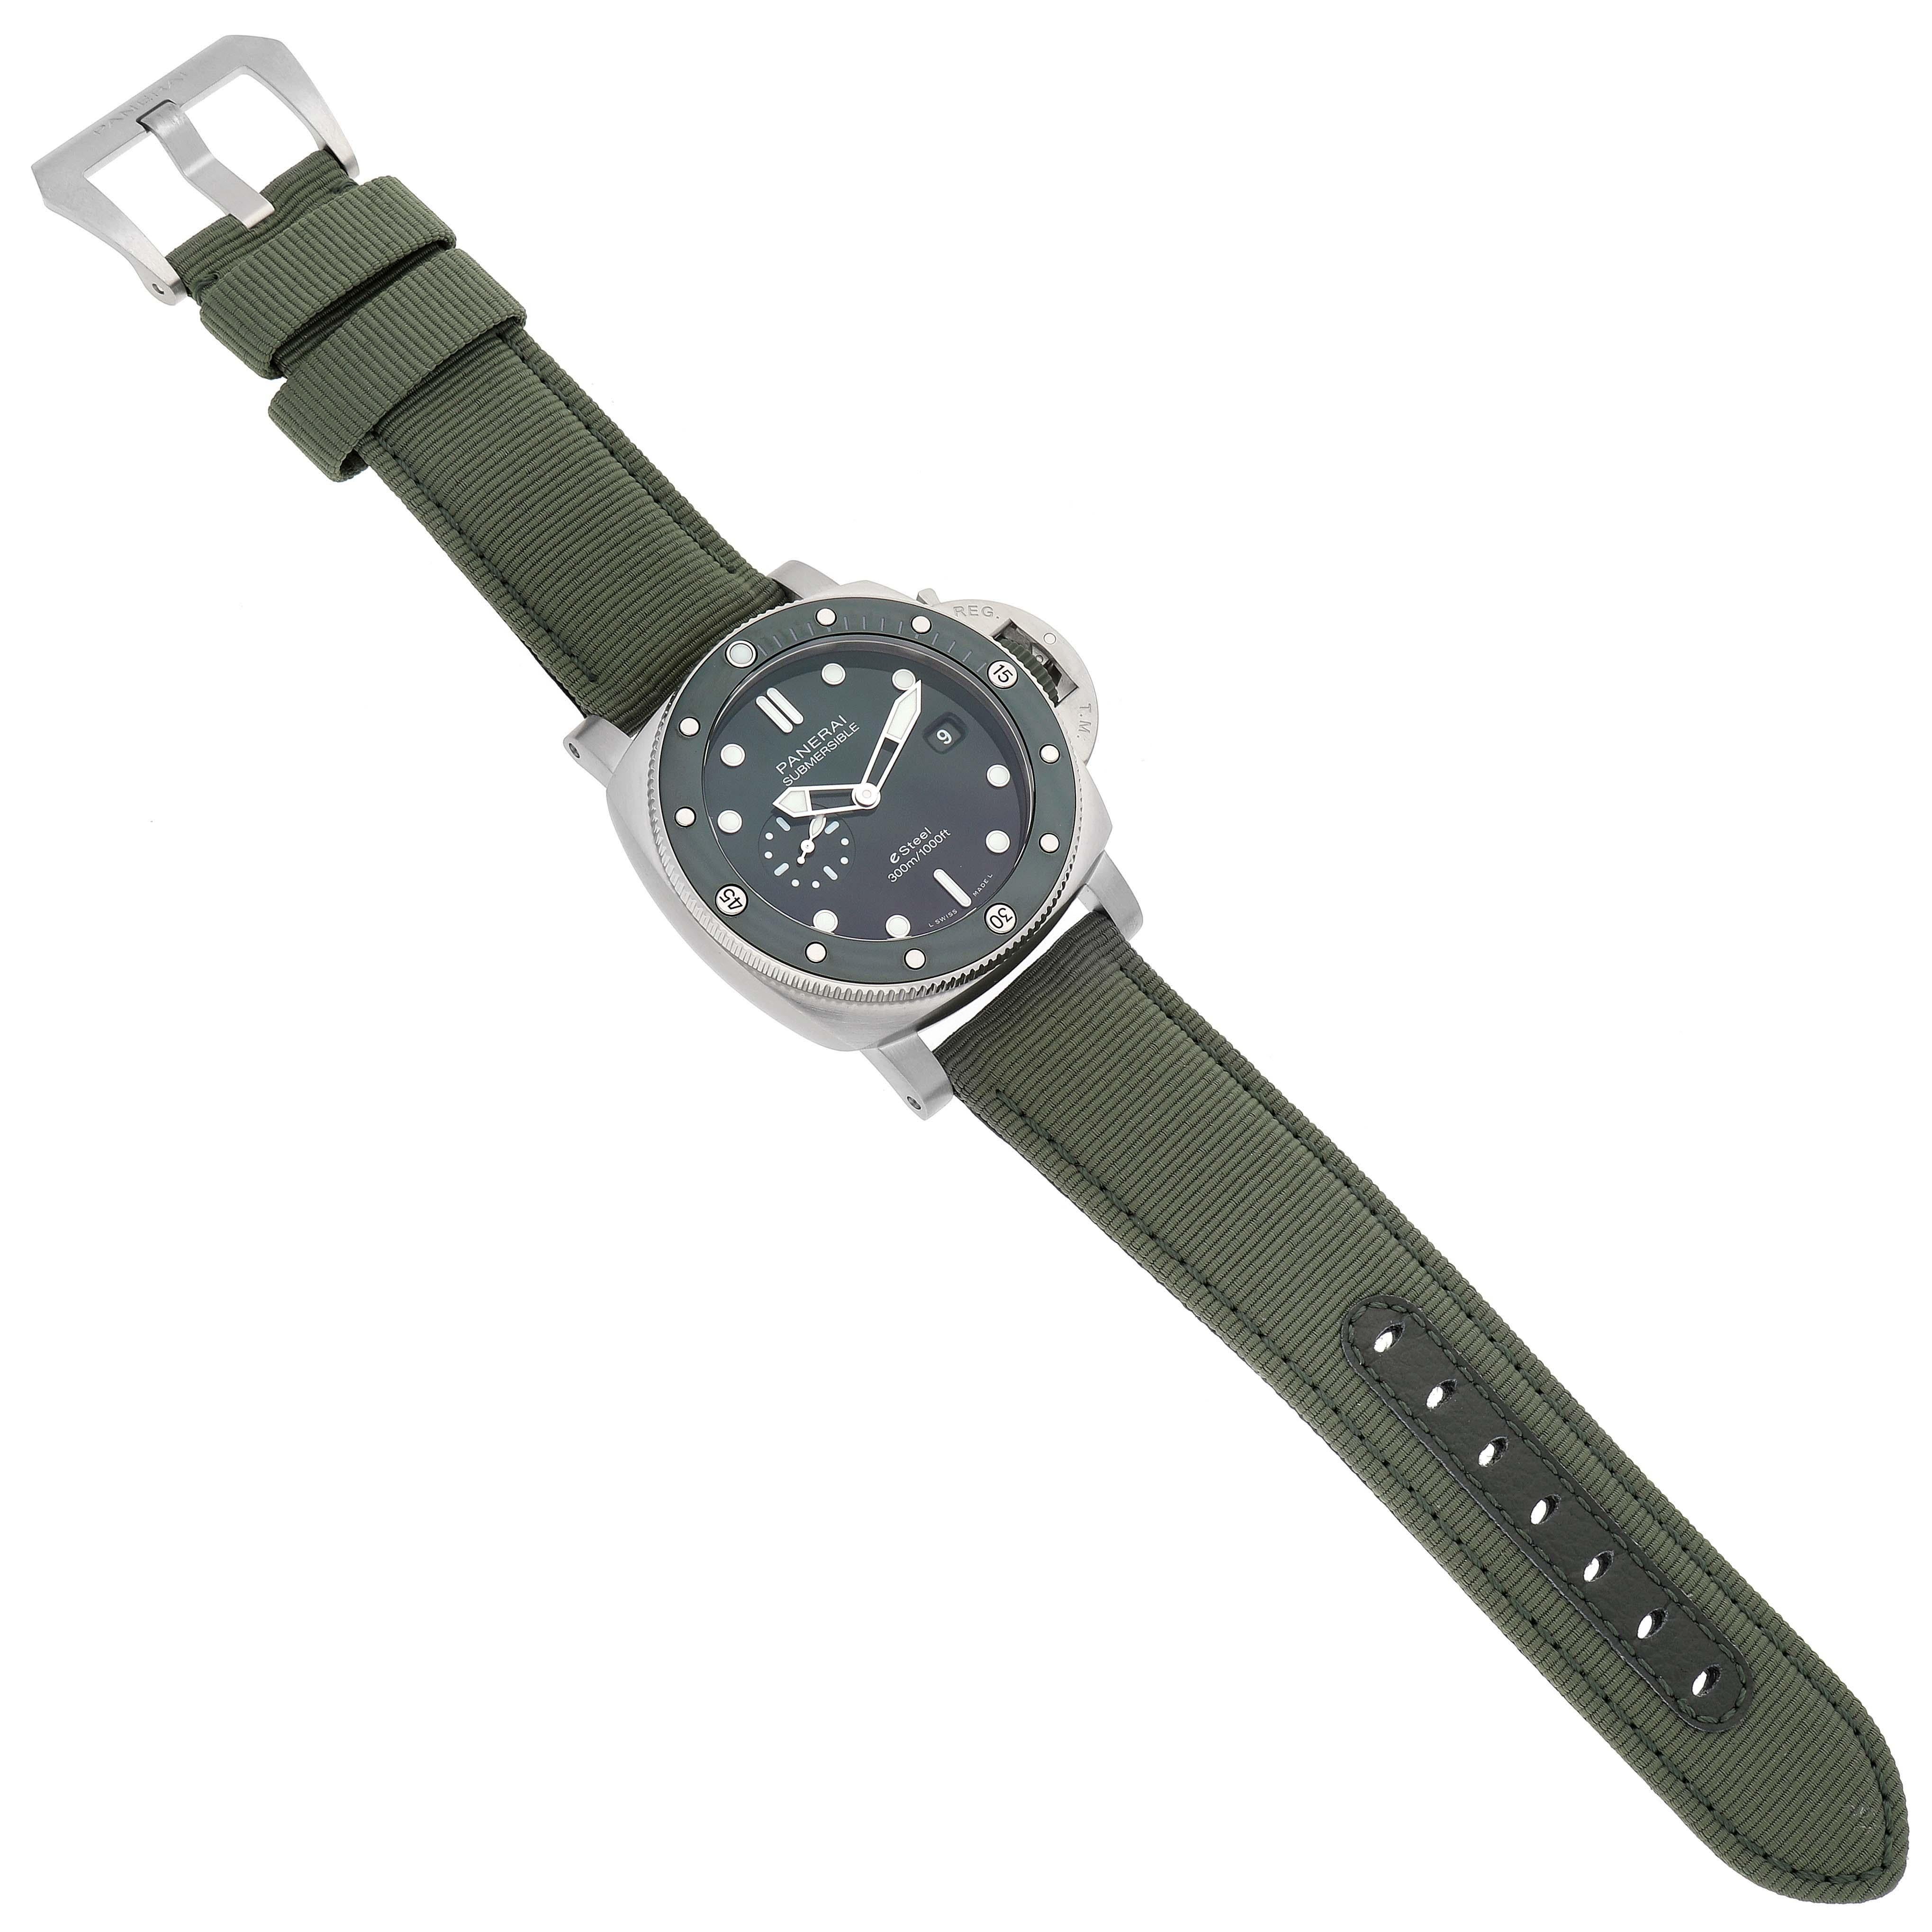 Panerai Submersible QuarantaQuattro Verde Smeraldo Steel Watch PAM01287 Unworn 4